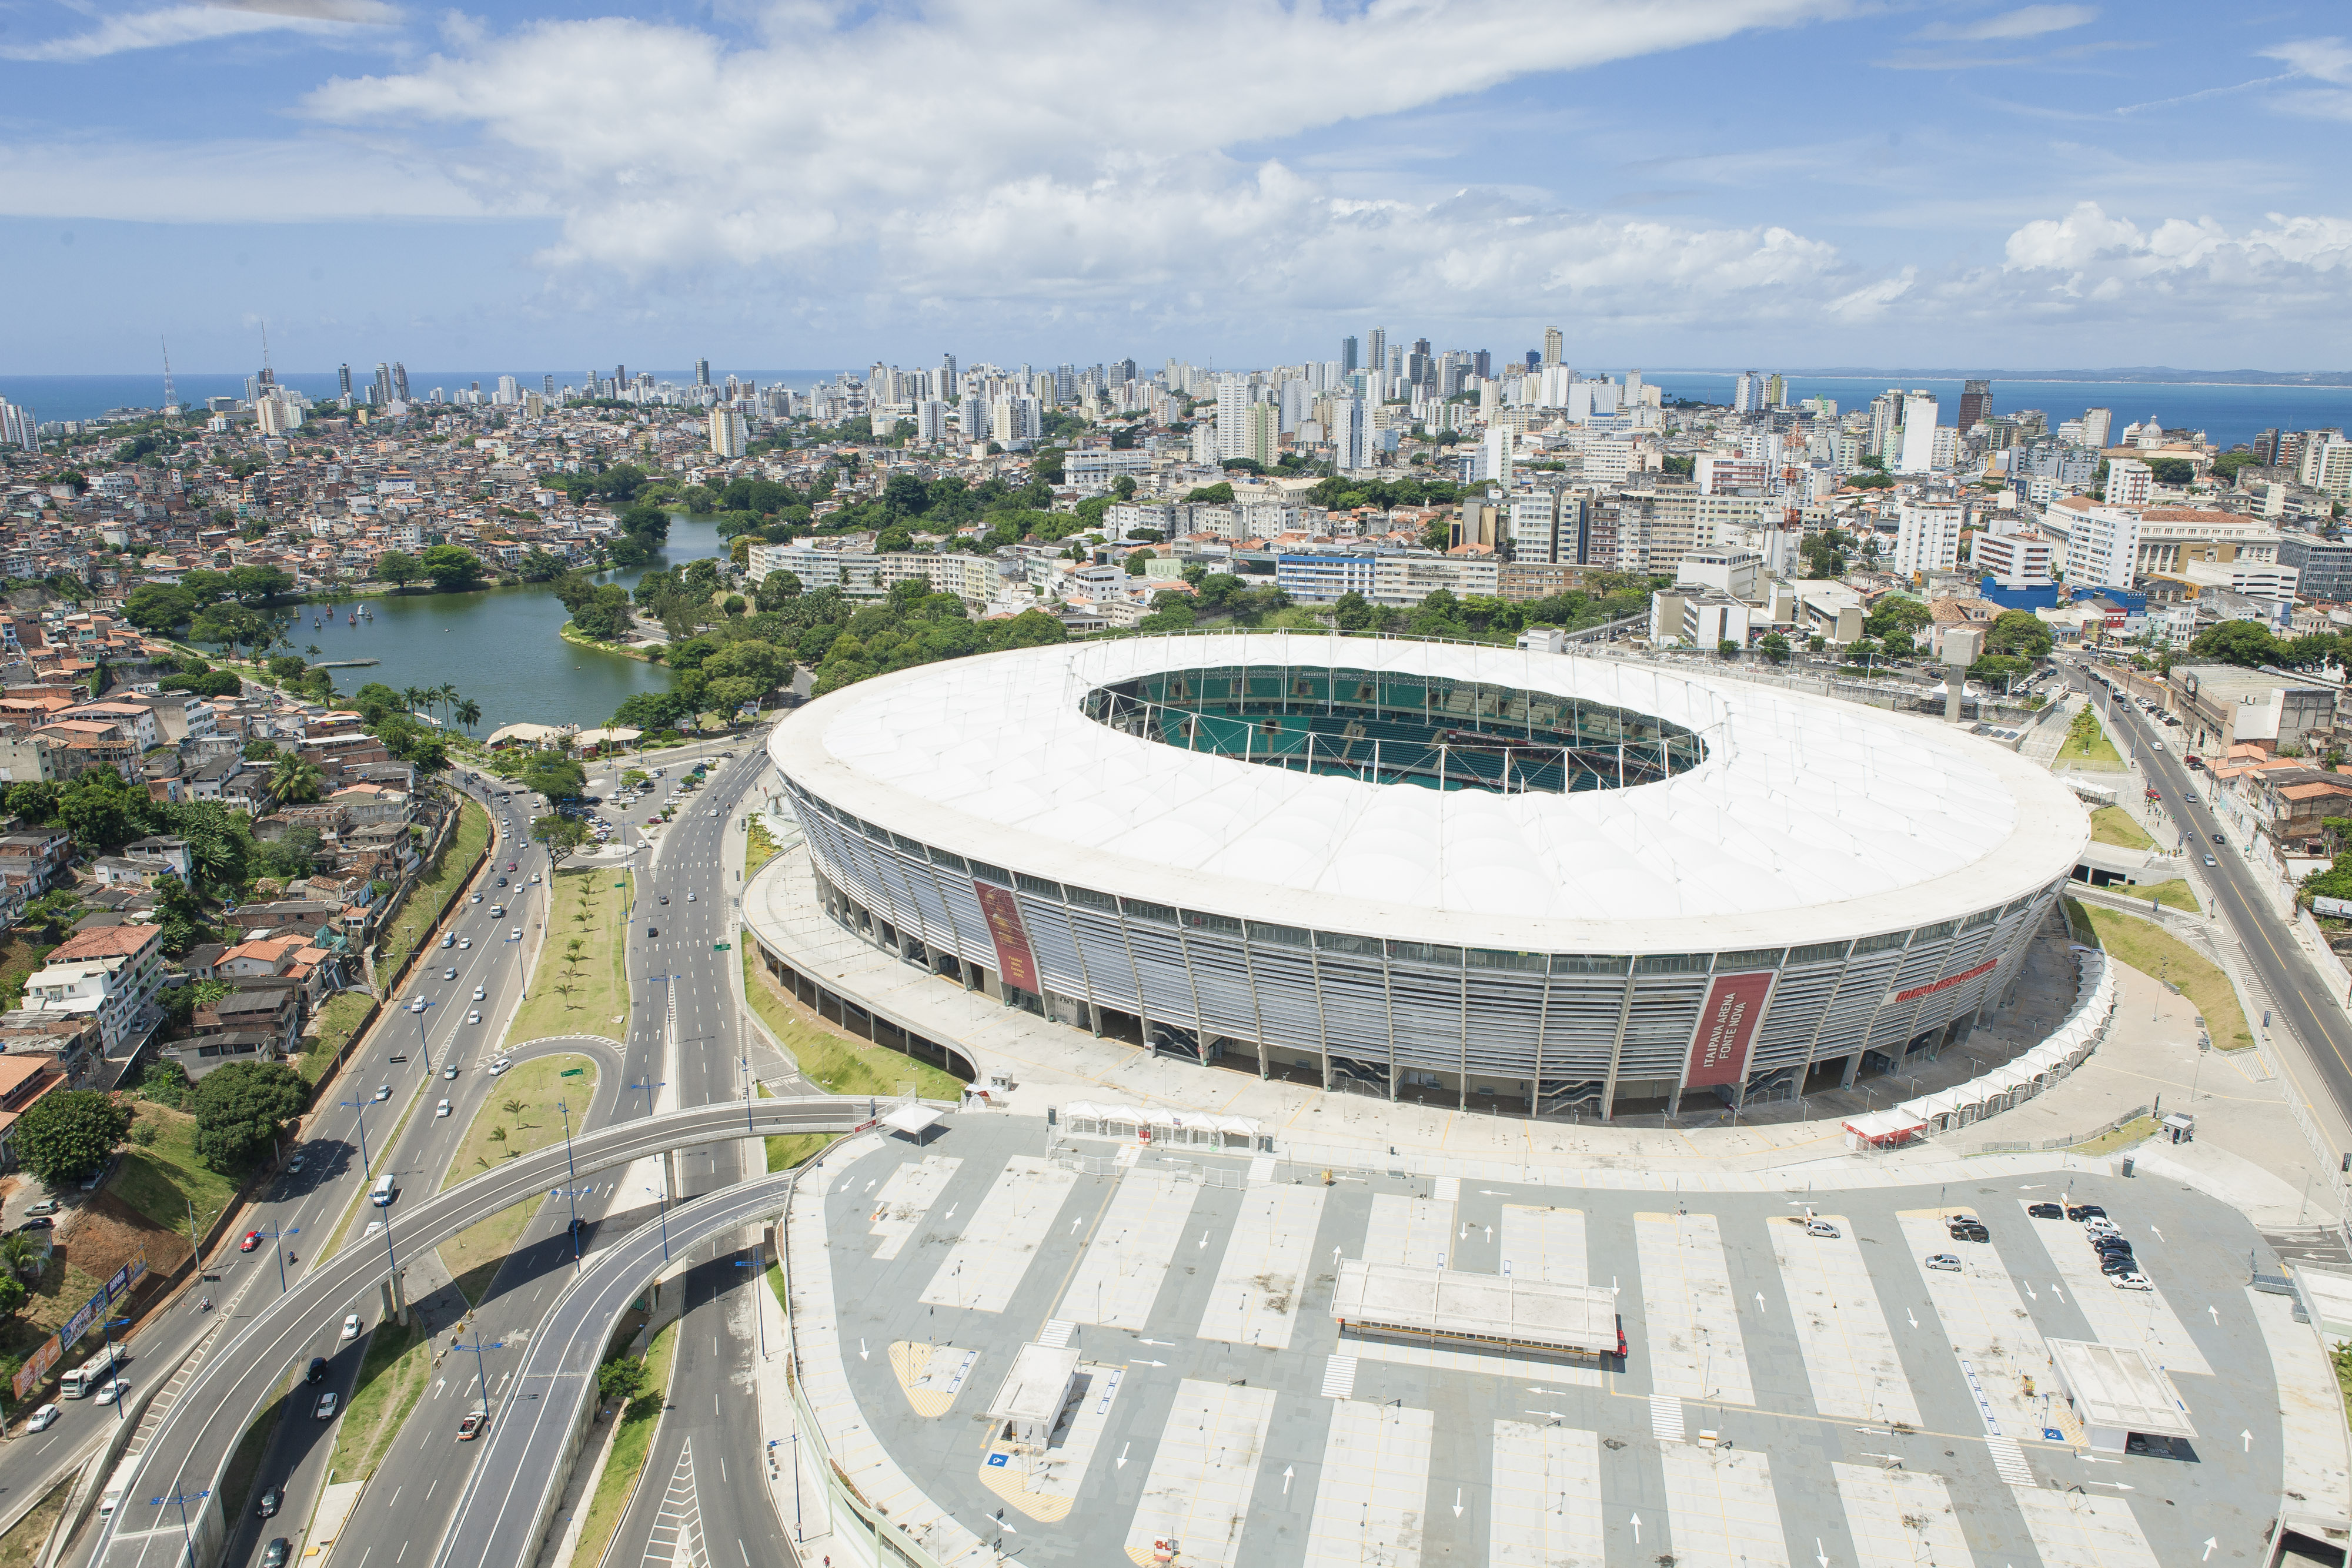 2016年裡約熱內盧奧運會足球比賽